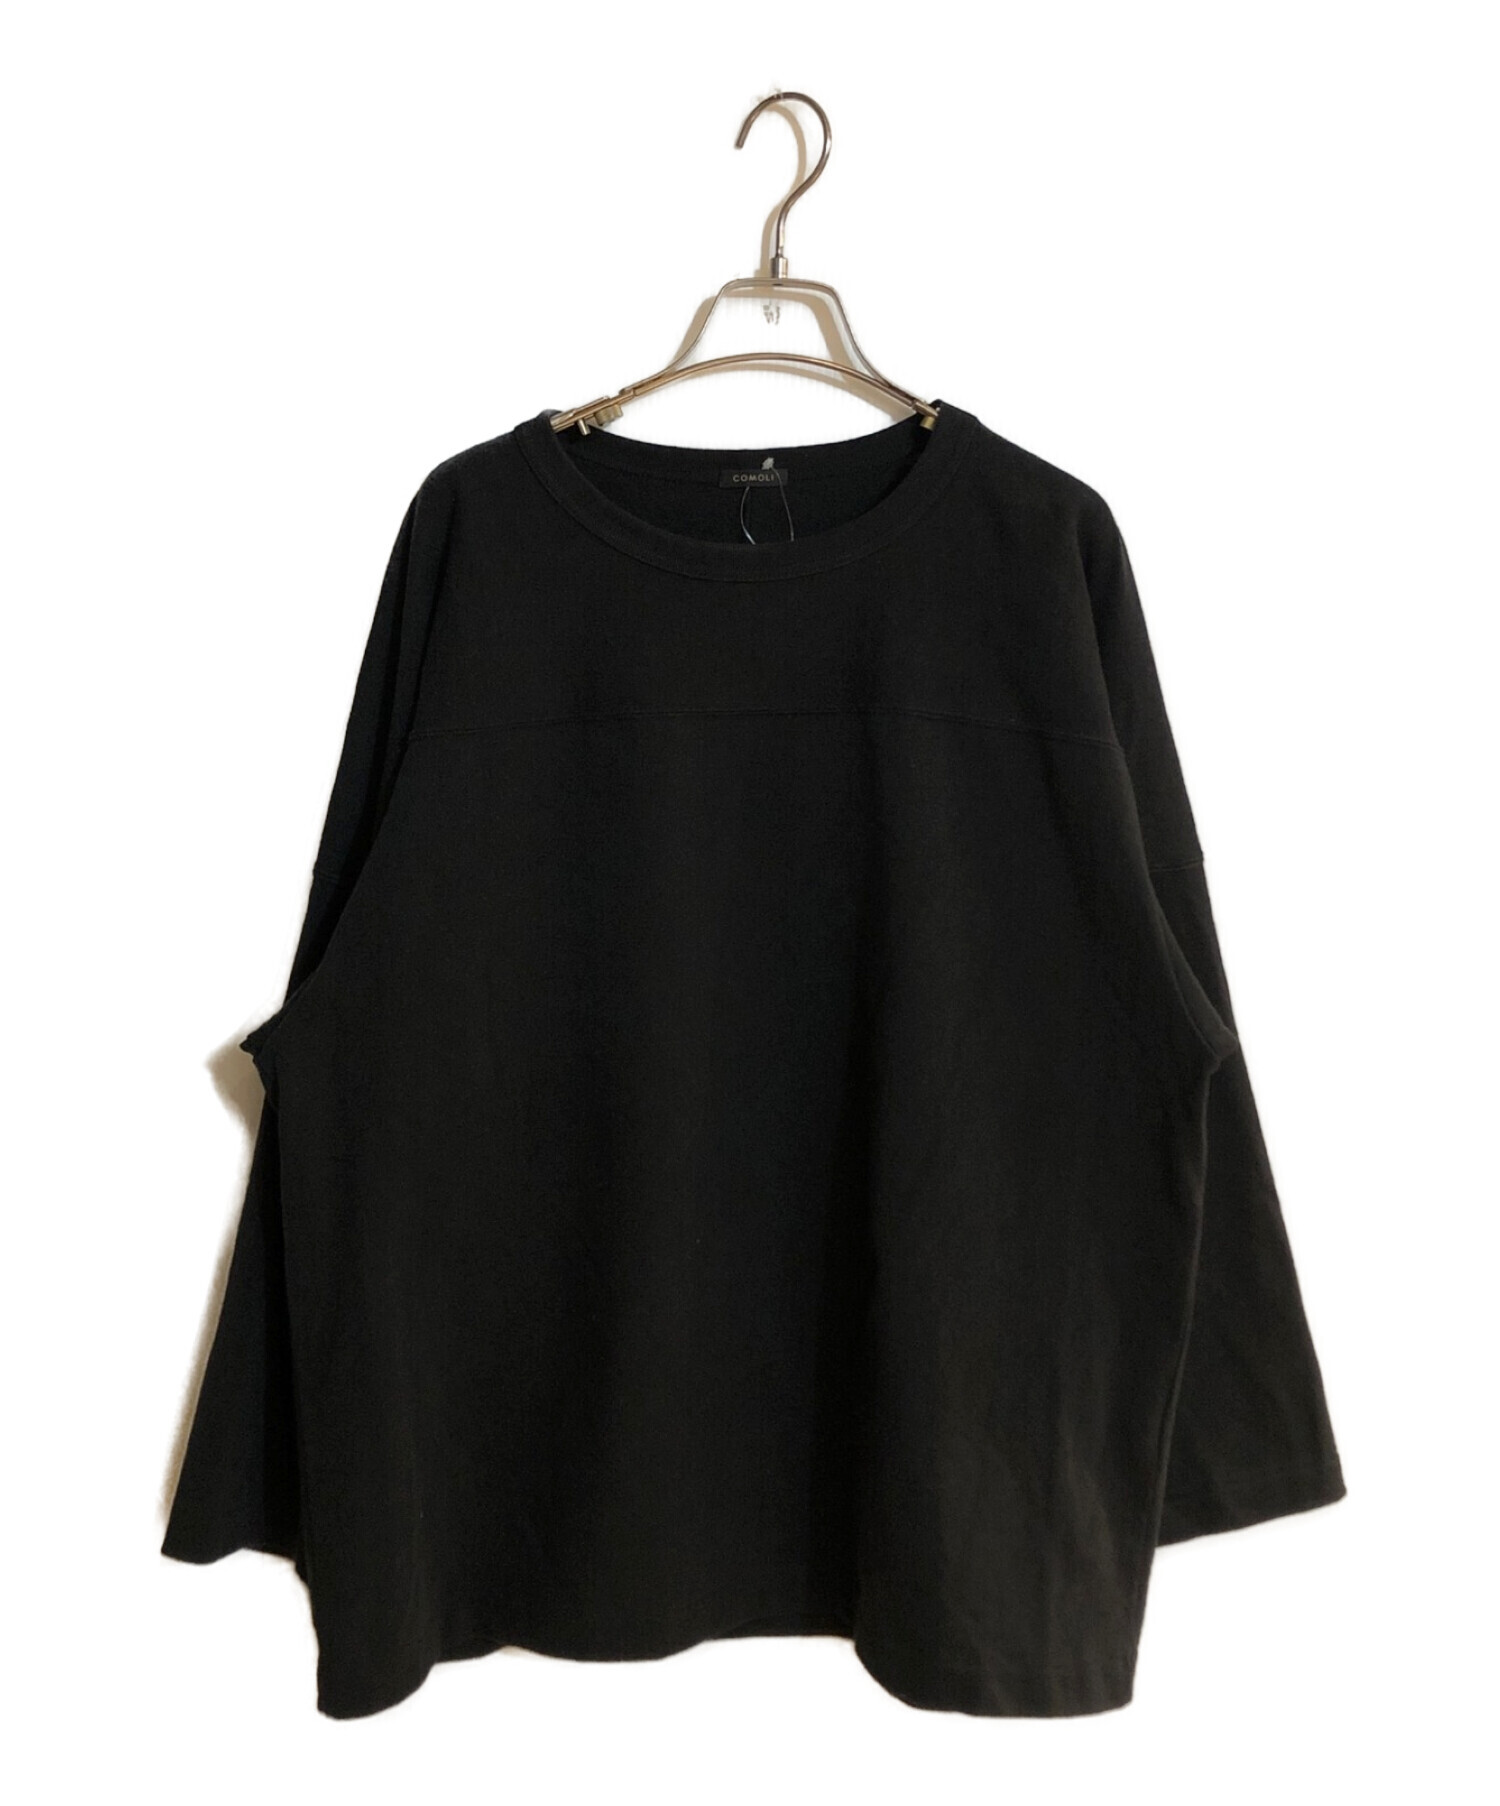 新品未使用】COMOLI コモリ フットボールT ブラック サイズ2 - Tシャツ